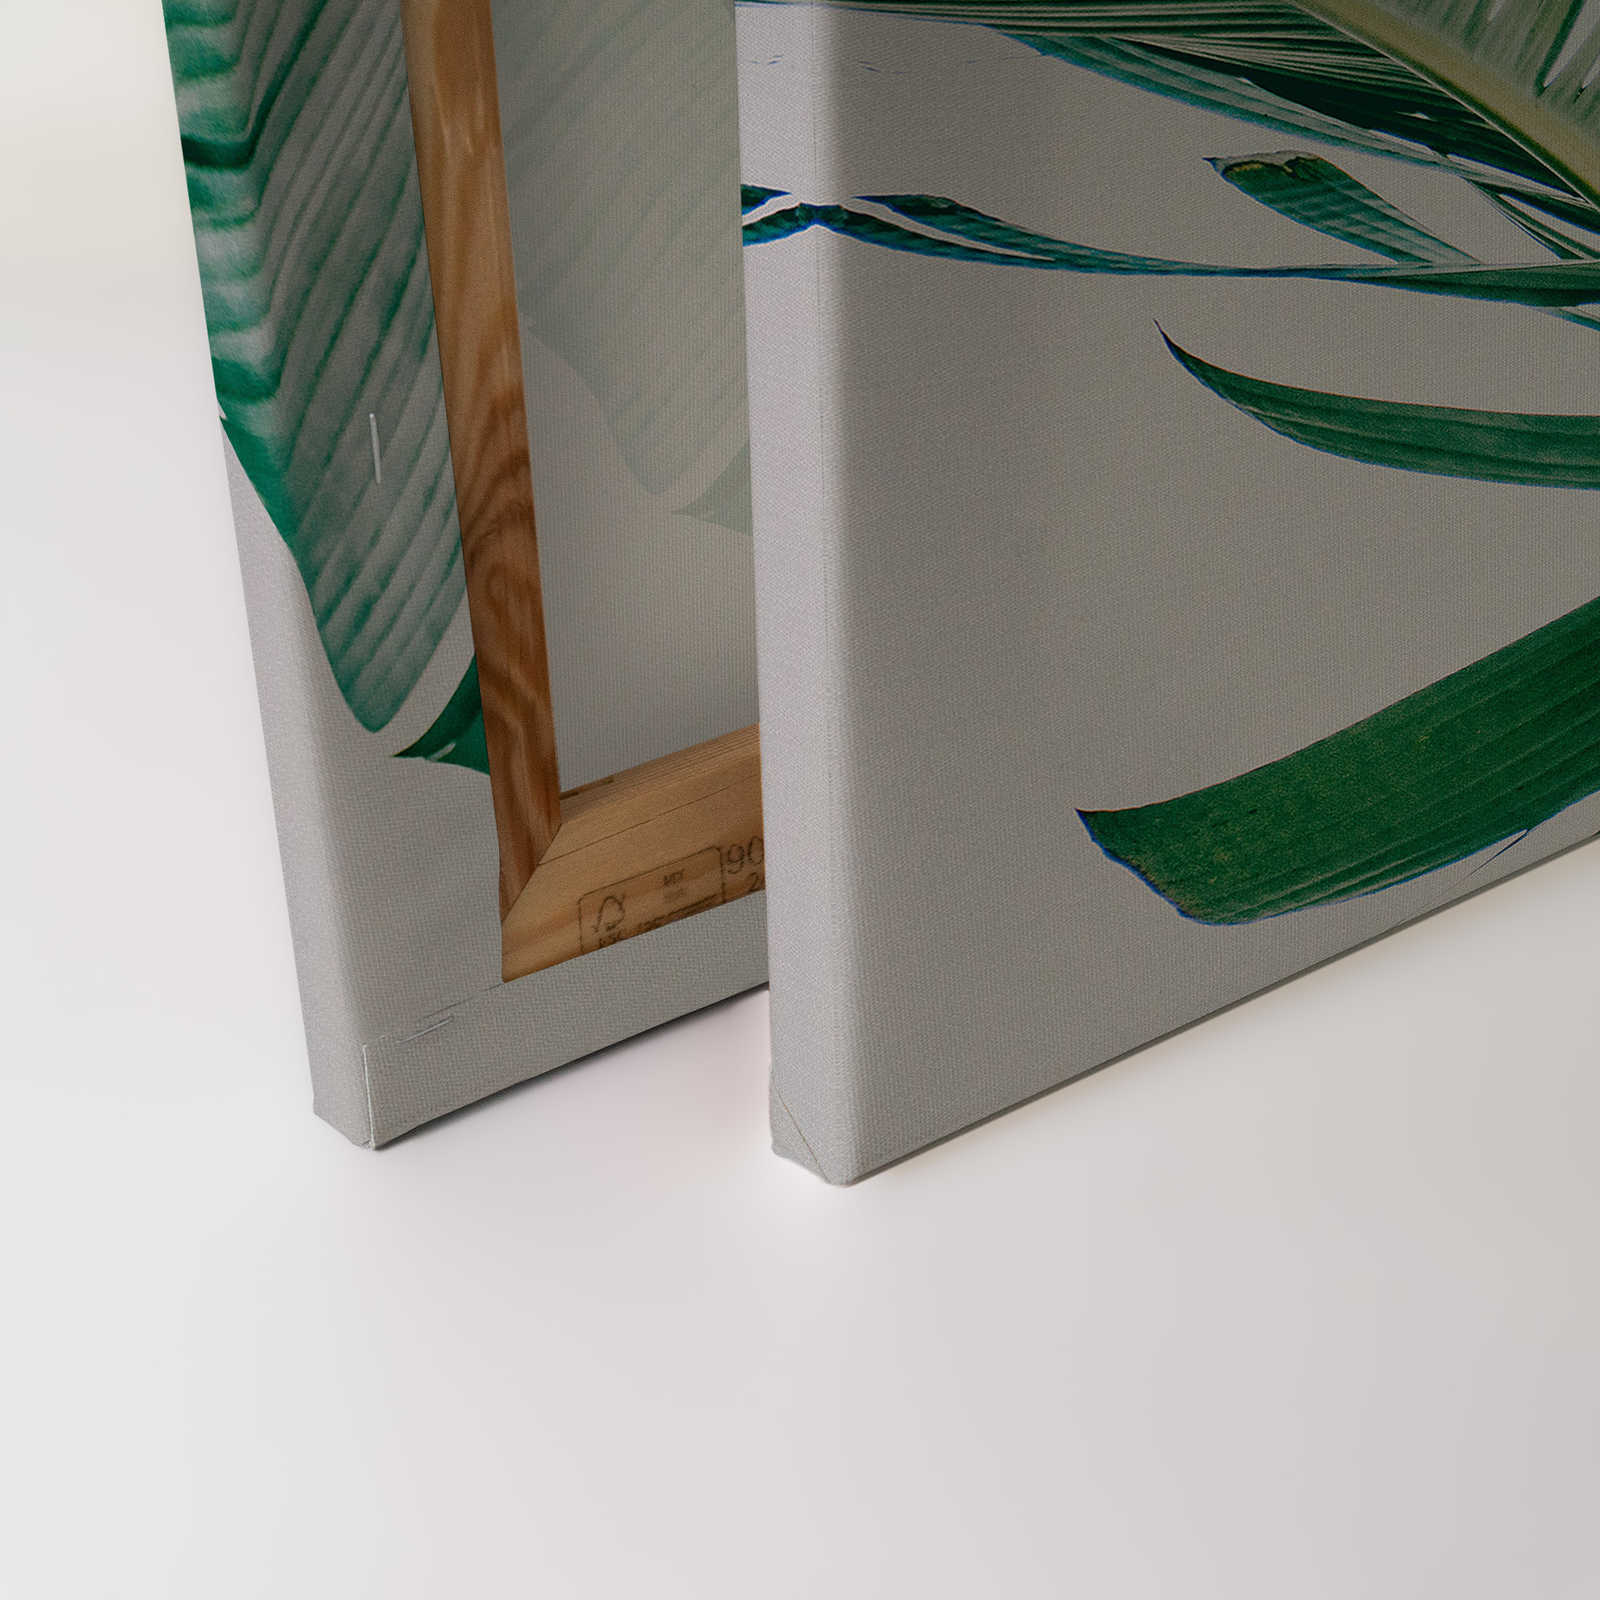             Toile avec feuilles de palmier motif naturel - 0,90 m x 0,60 m
        